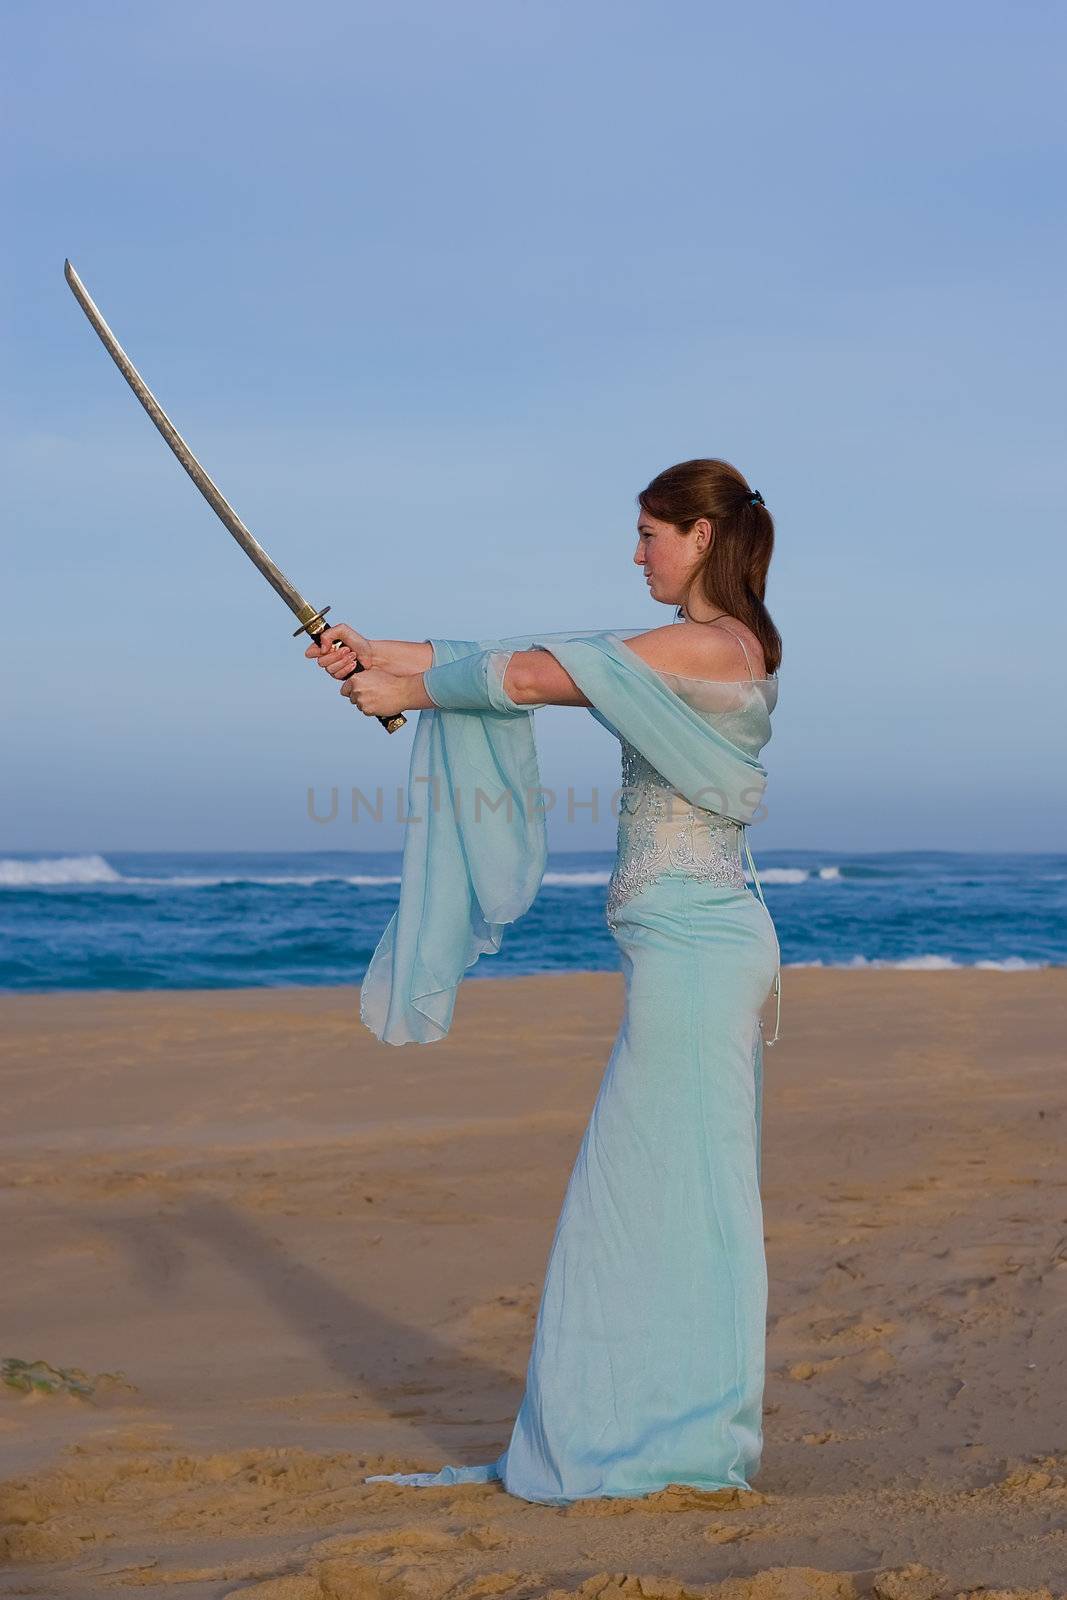 Attractive female model holding a samurai sword